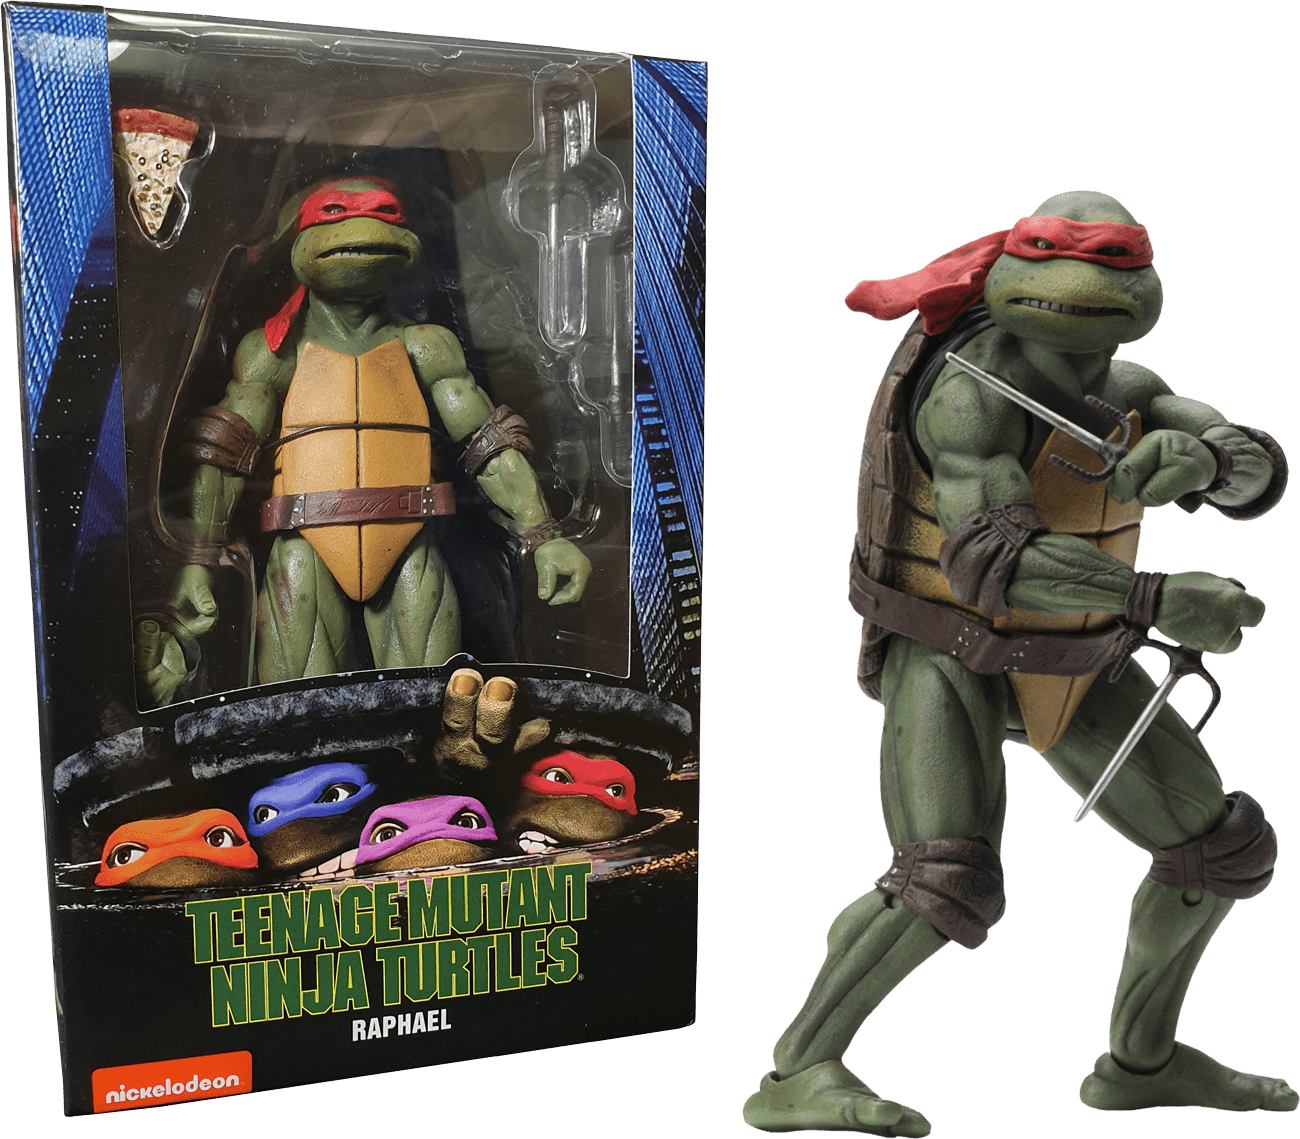 Teenage Mutant Ninja Turtles 1990 Raphael 7” Action Figure Toy Nerds